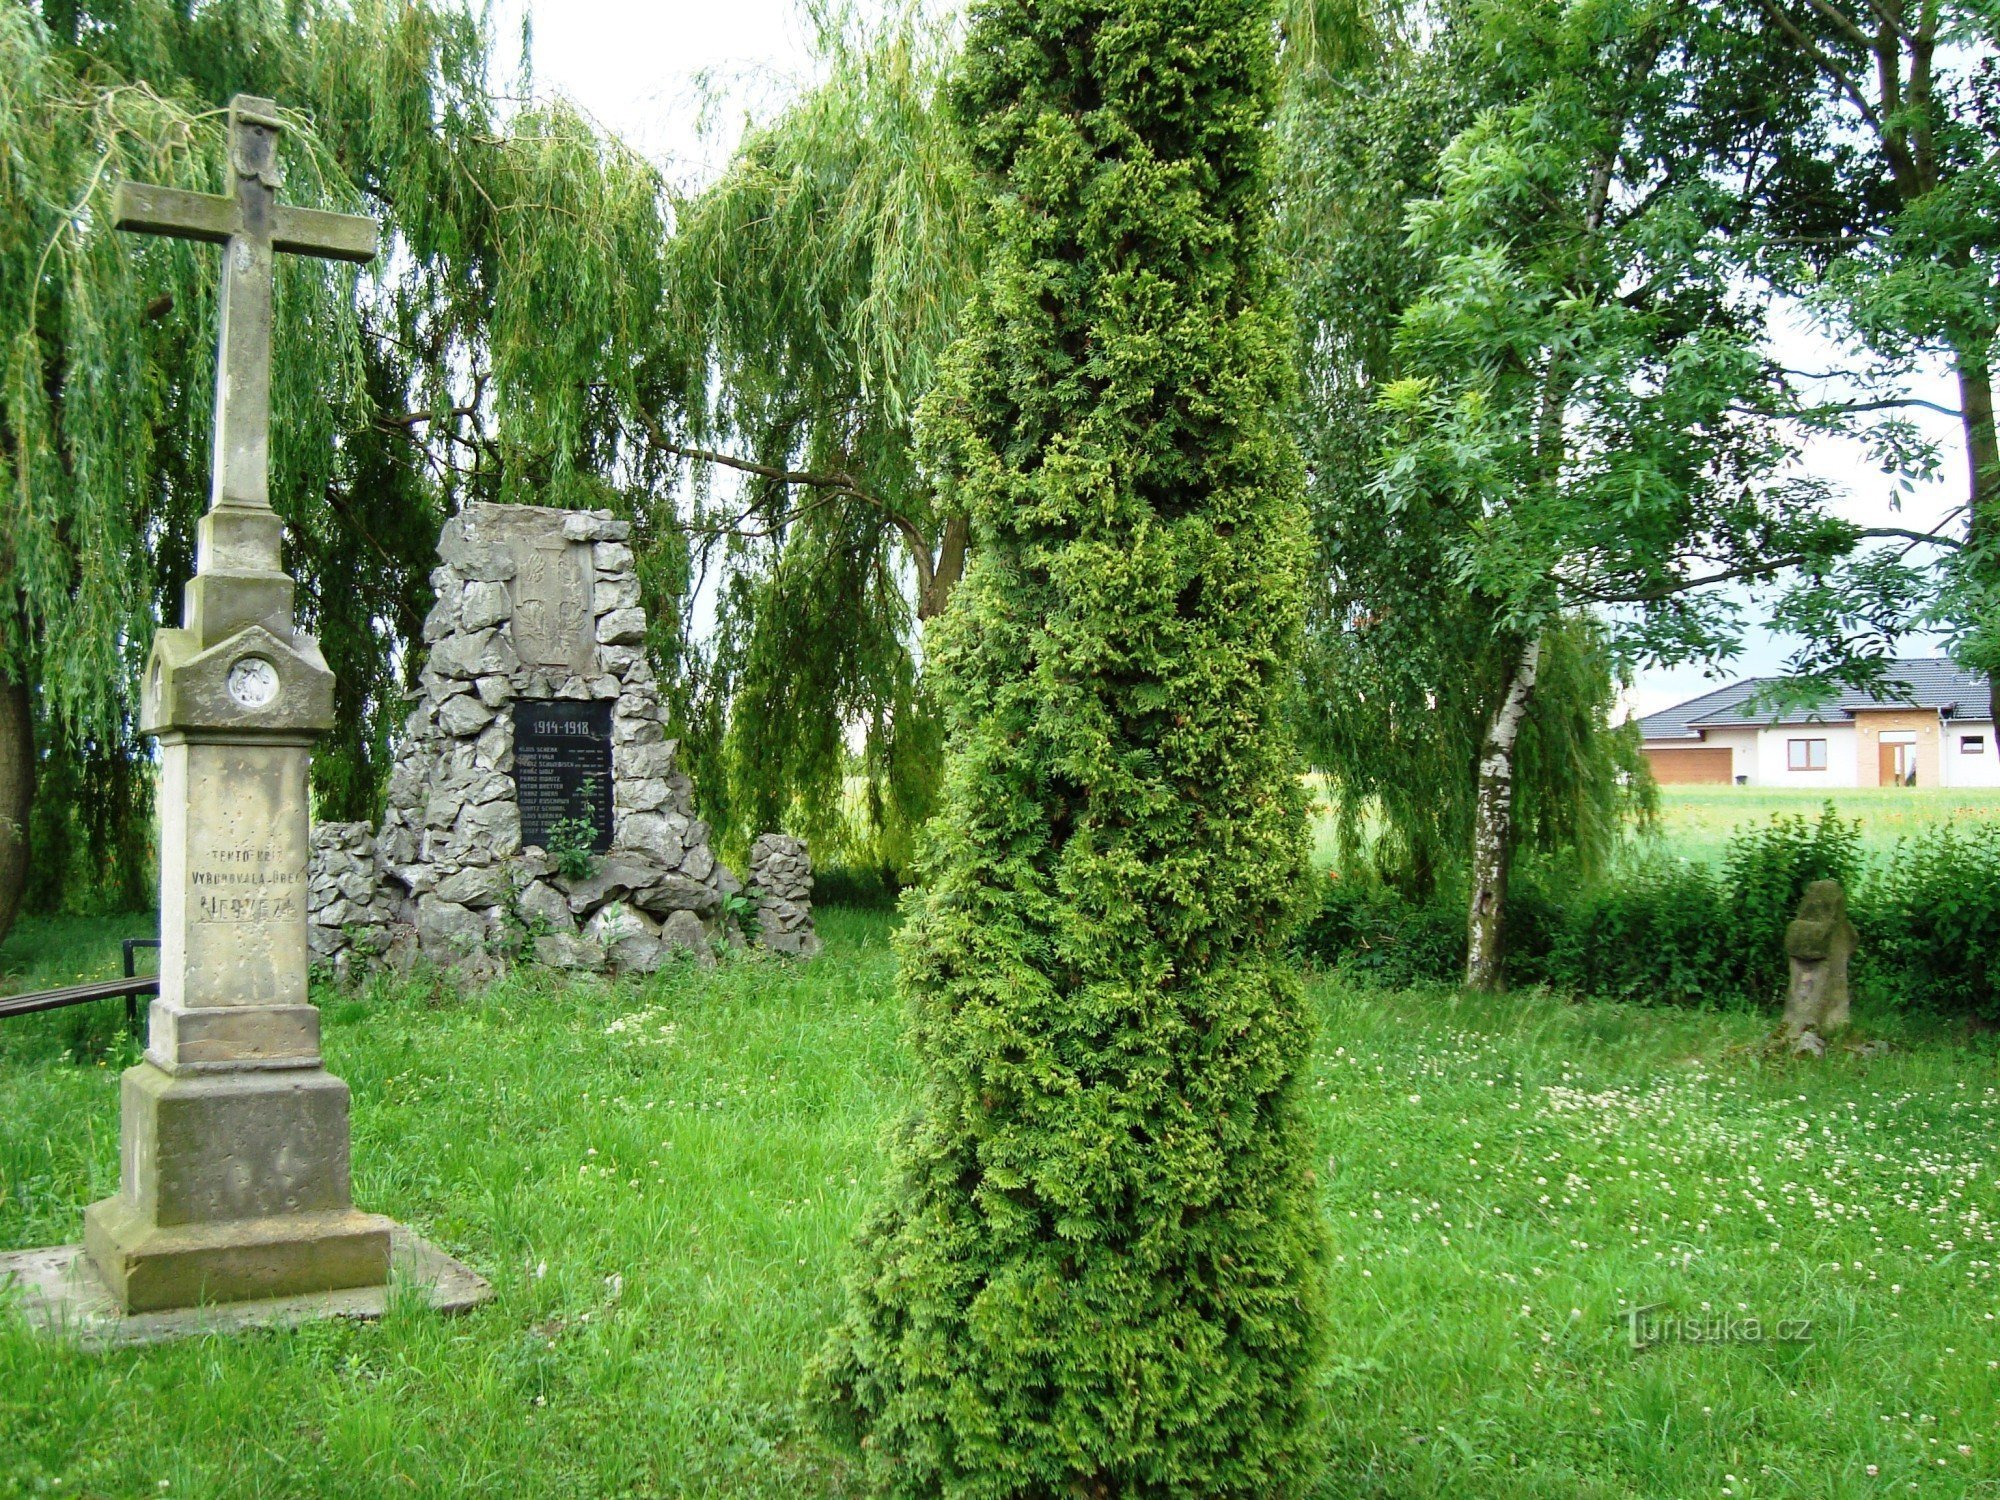 Nedvězí-Park am Anfang des Dorfes mit einem Versöhnungskreuz, einem Steinkreuz aus dem Jahr 1869 und Pom